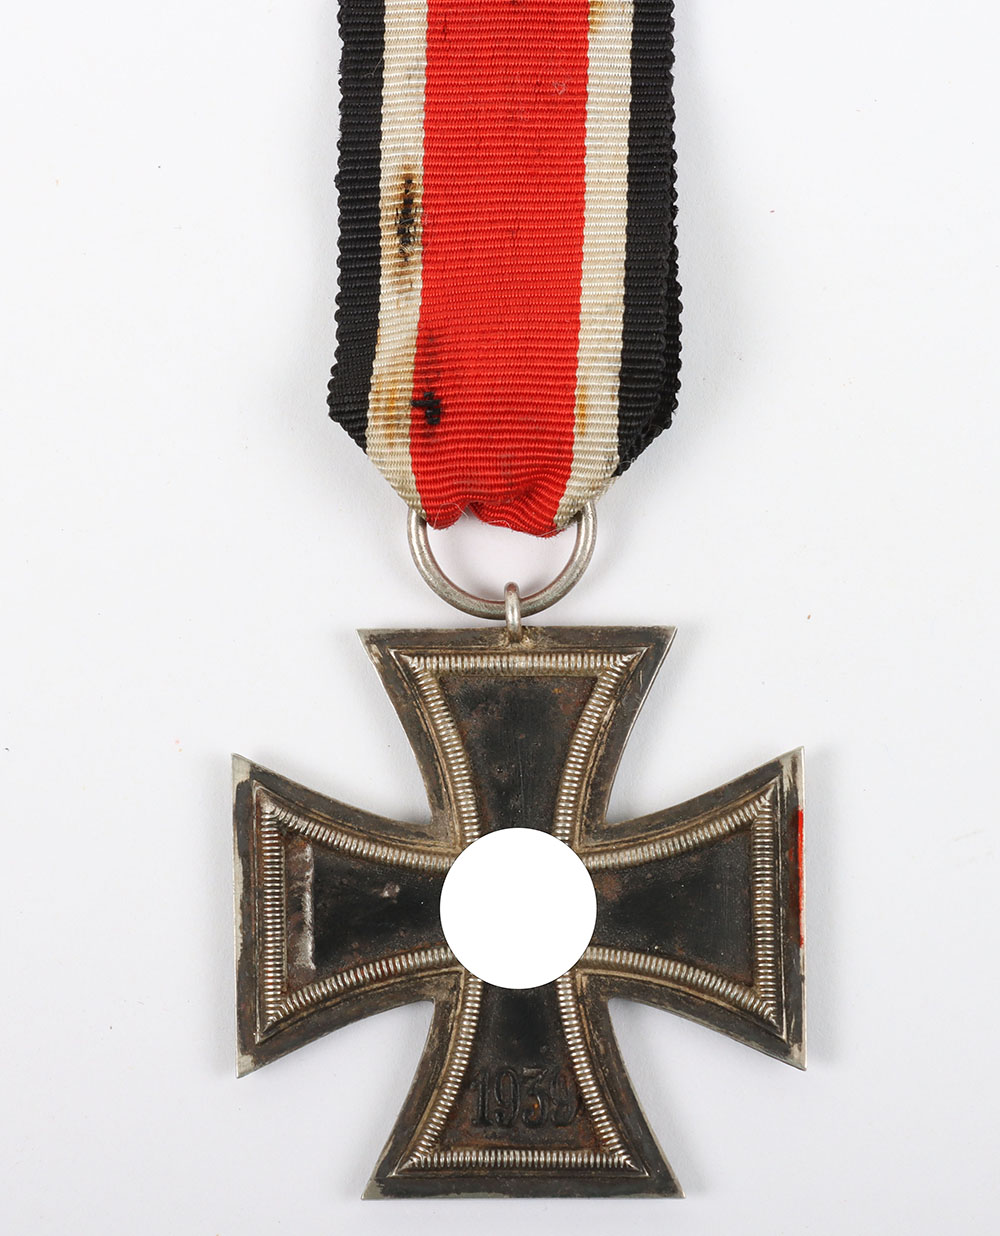 WW2 German 1939 Iron Cross 2nd Class by Rare Maker Grossmann & Co, Wien